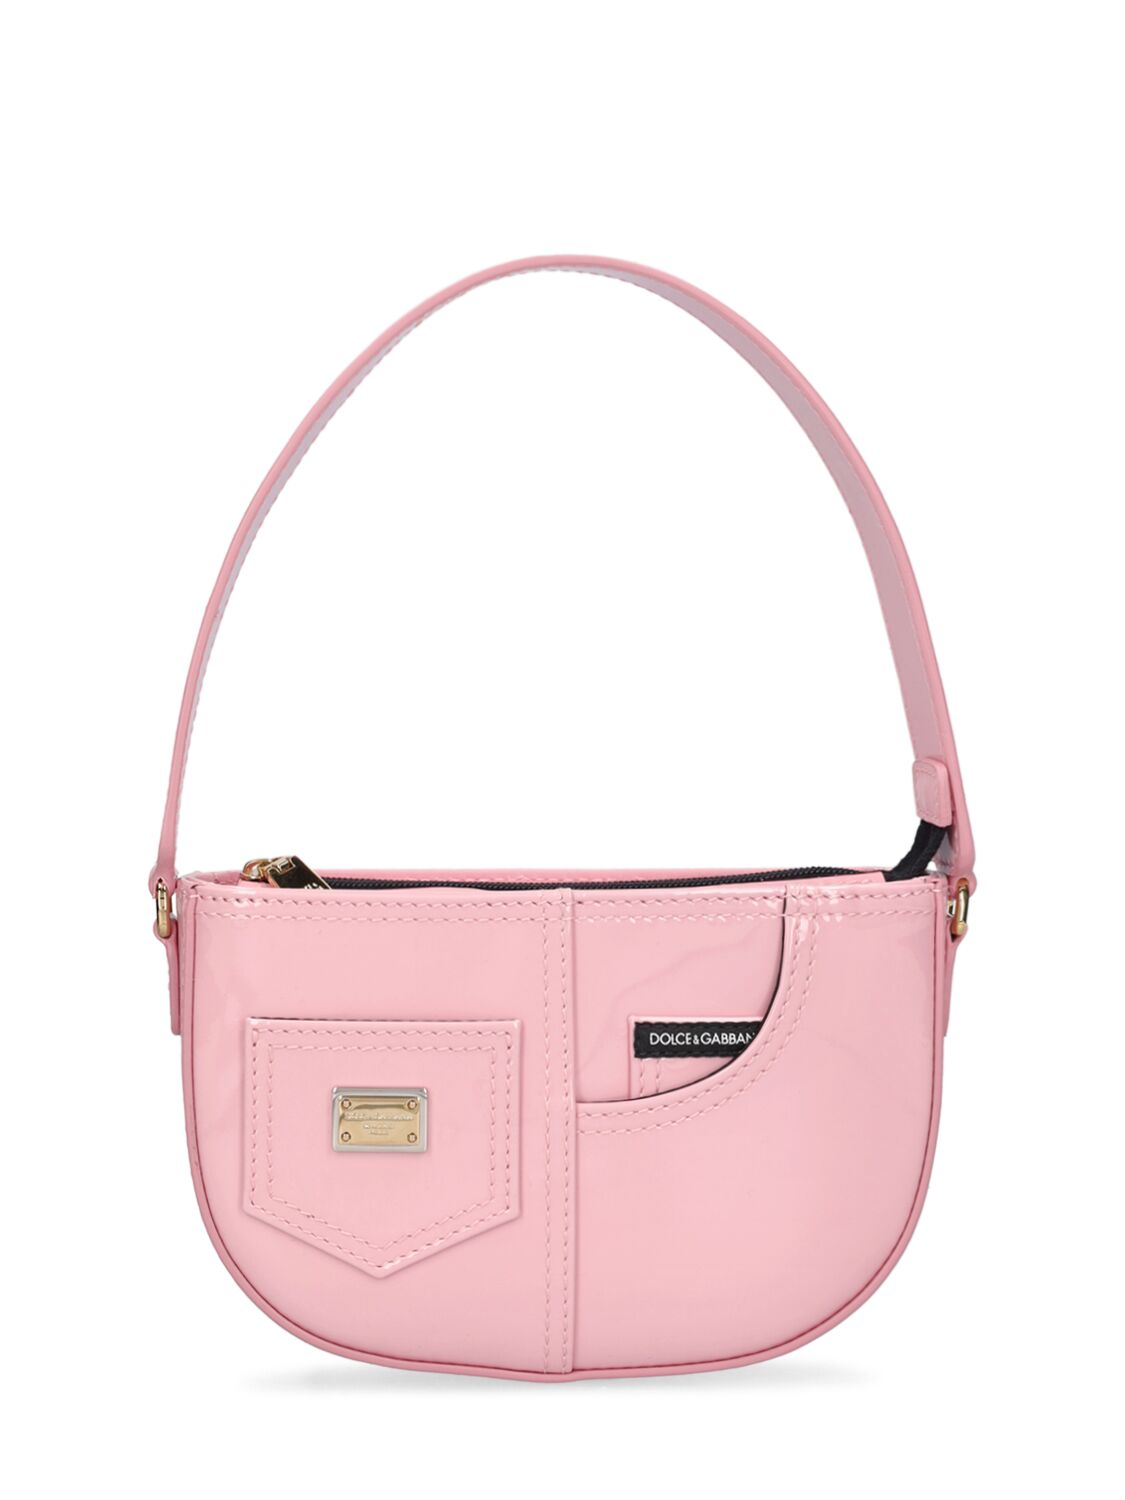 Dolce & Gabbana Kids' Patent Leather Shoulder Bag In Pink